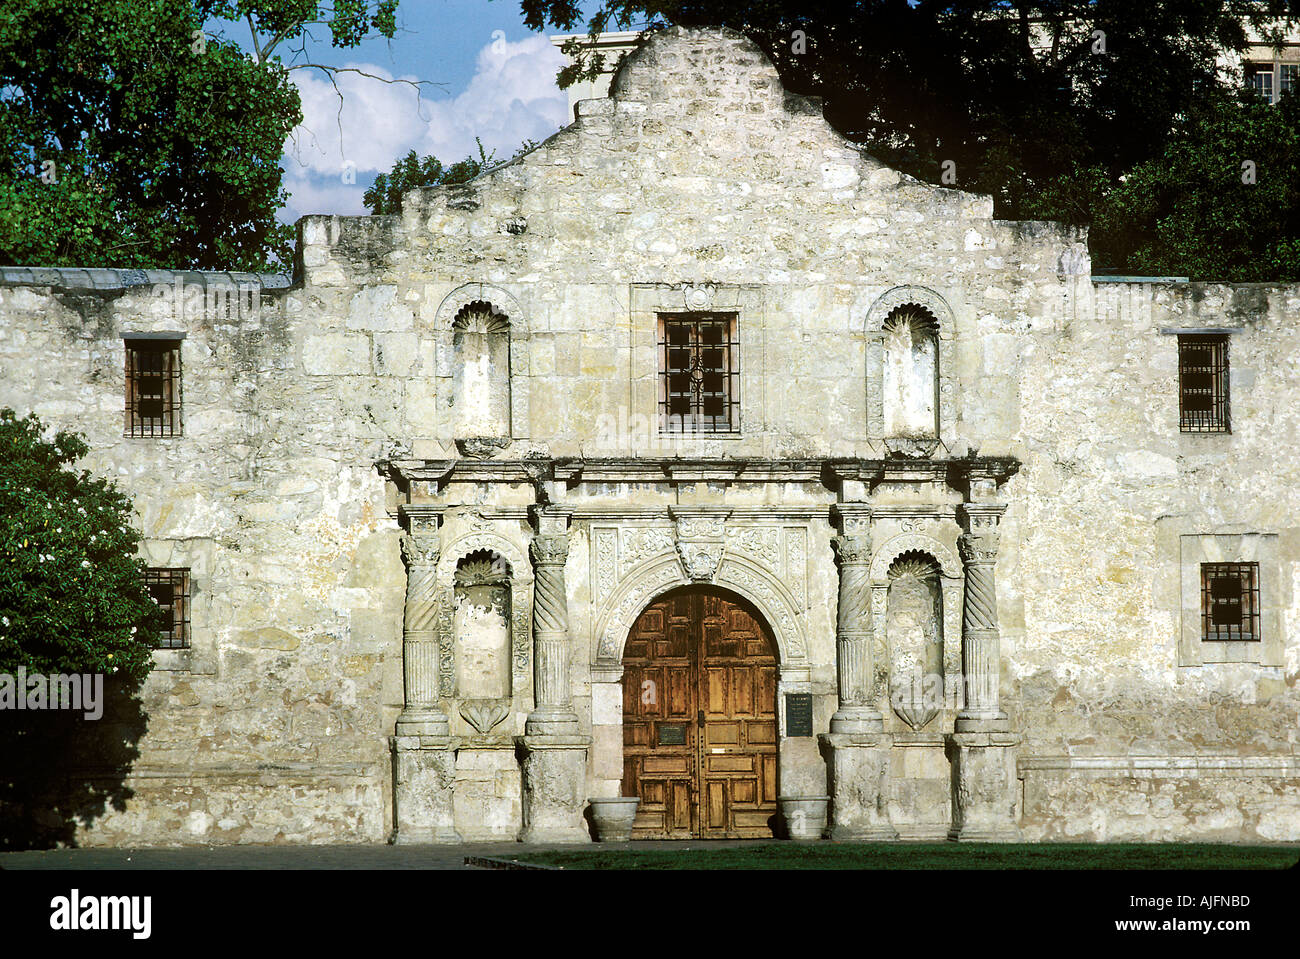 L'Alamo San Antonio Texas Monument Historique Mission de guerre de l'Amérique Espagnole Banque D'Images